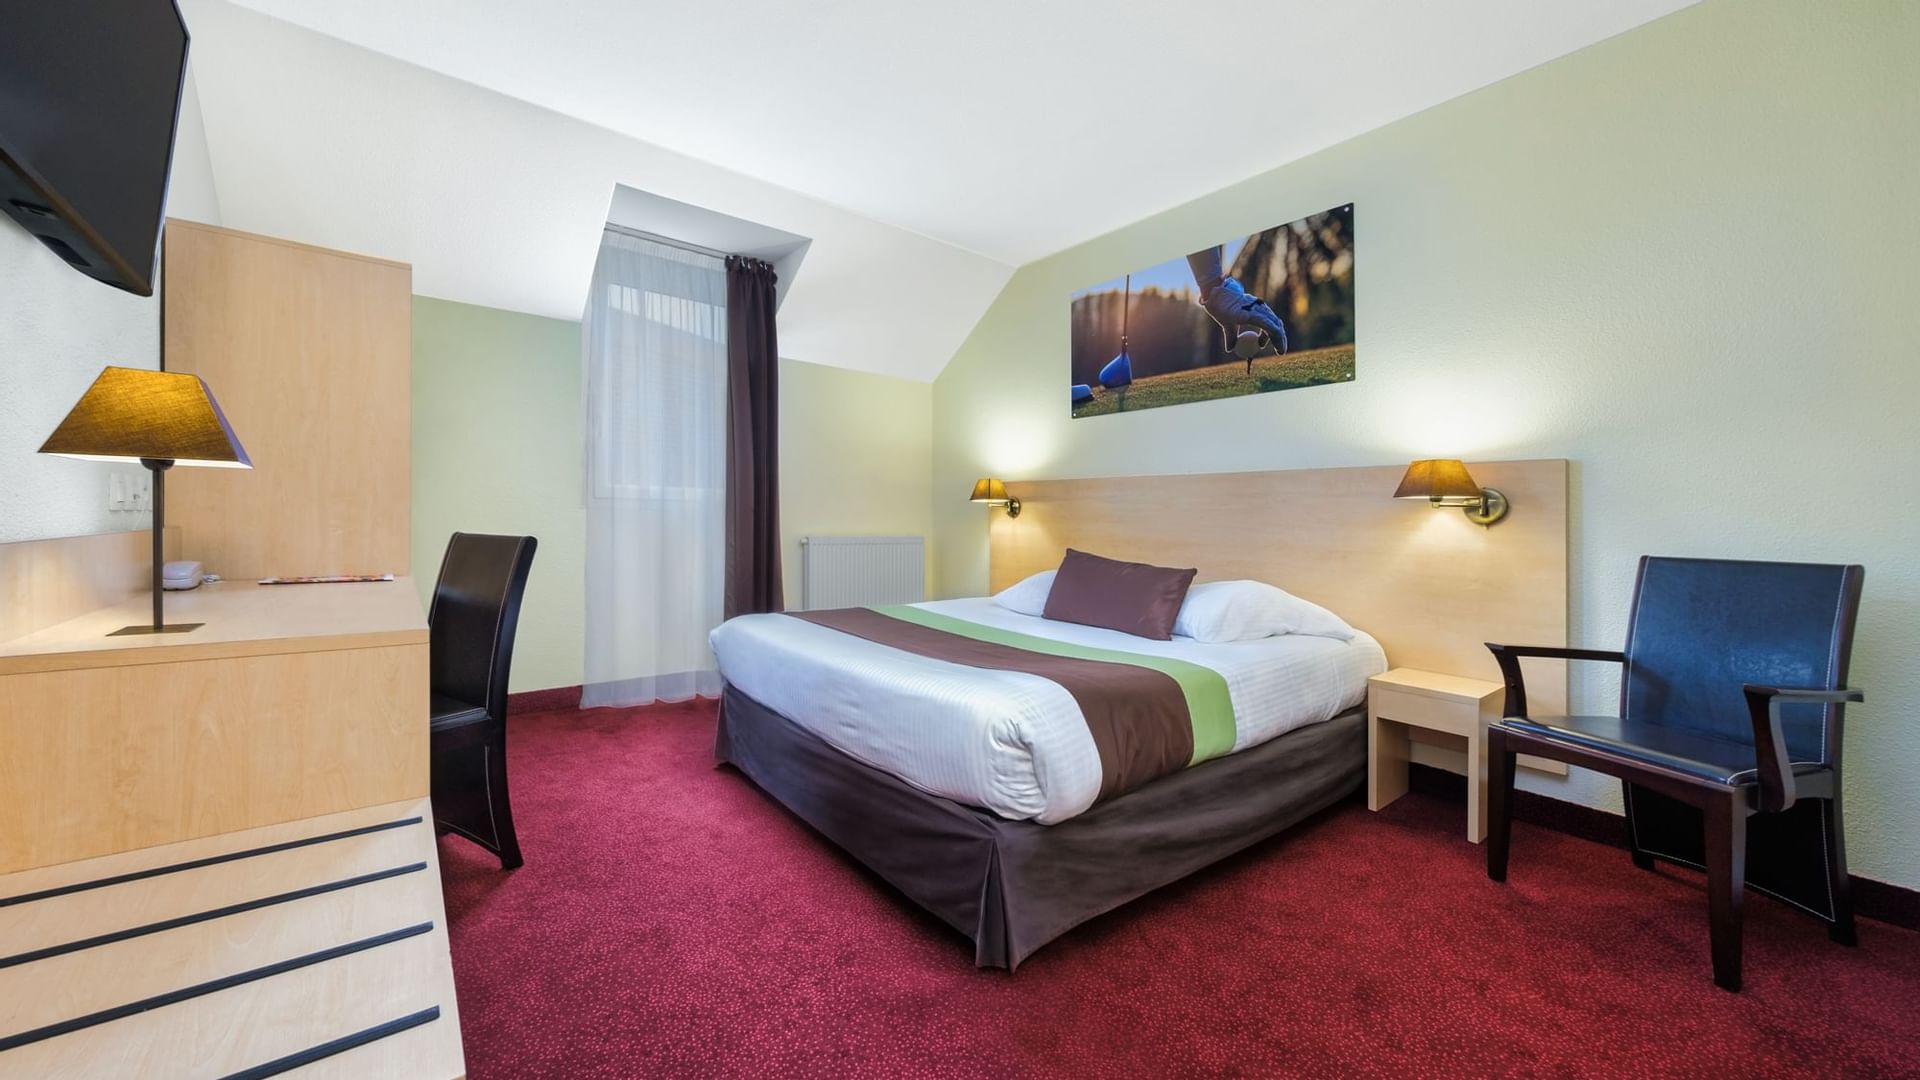 Bed arrangement in Hotel Acadine of The Originals Hotels